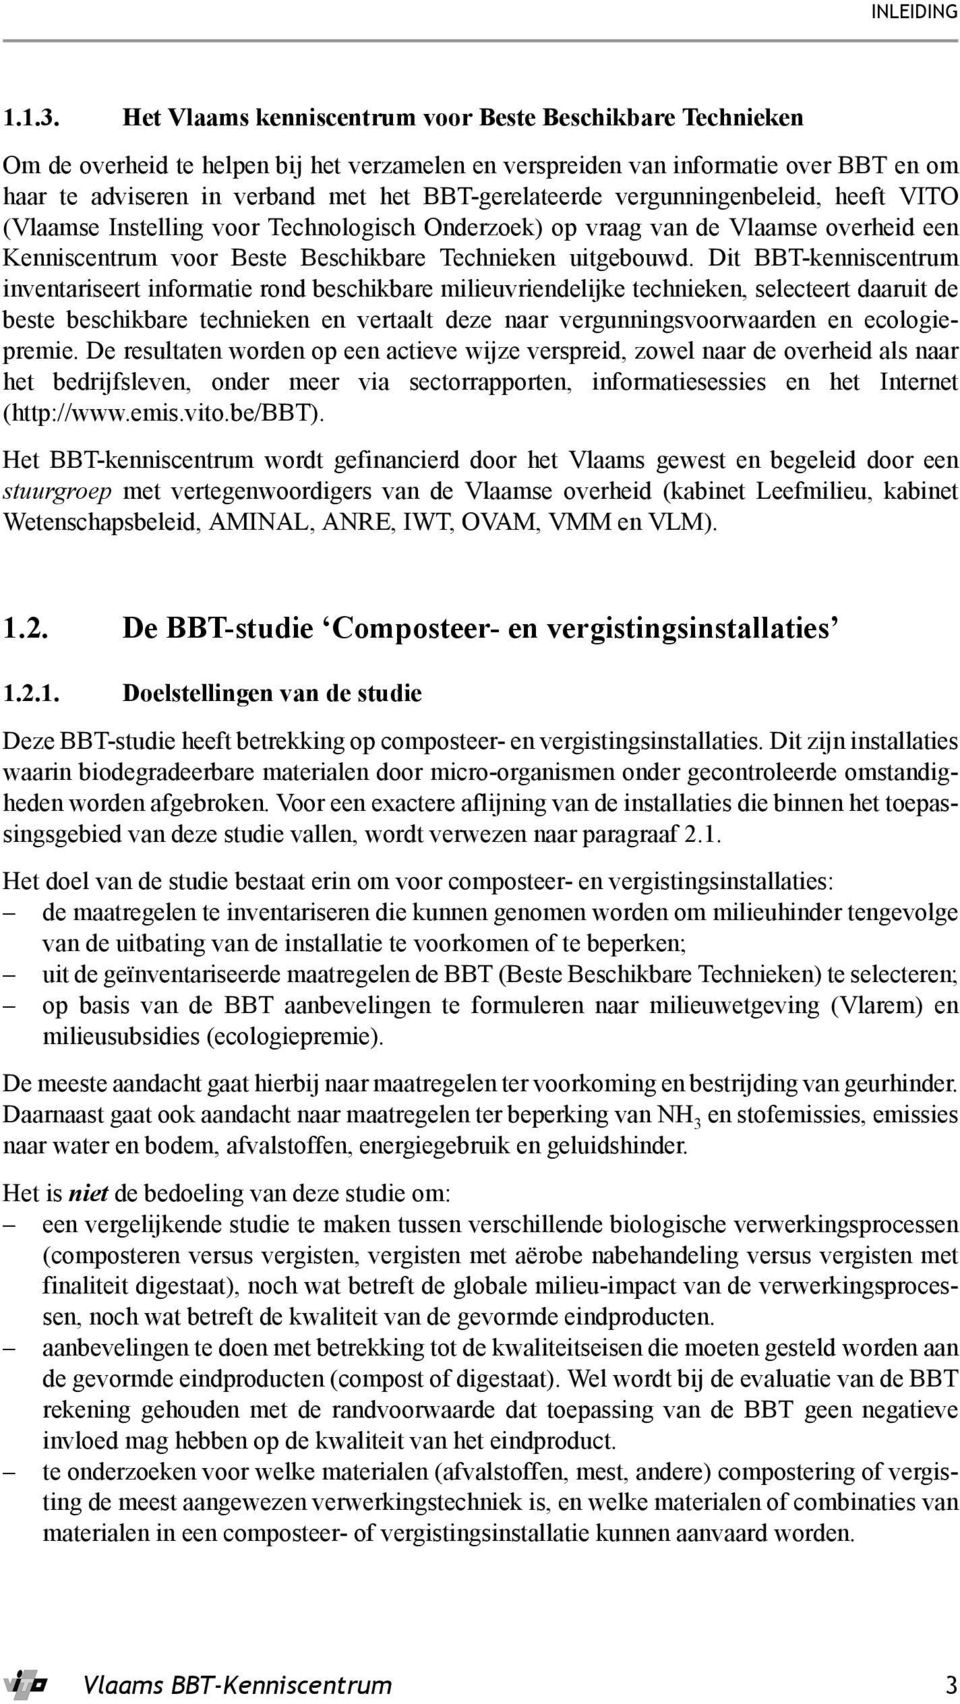 BBT-gerelateerde vergunningenbeleid, heeft VITO (Vlaamse Instelling voor Technologisch Onderzoek) op vraag van de Vlaamse overheid een Kenniscentrum voor Beste Beschikbare Technieken uitgebouwd.